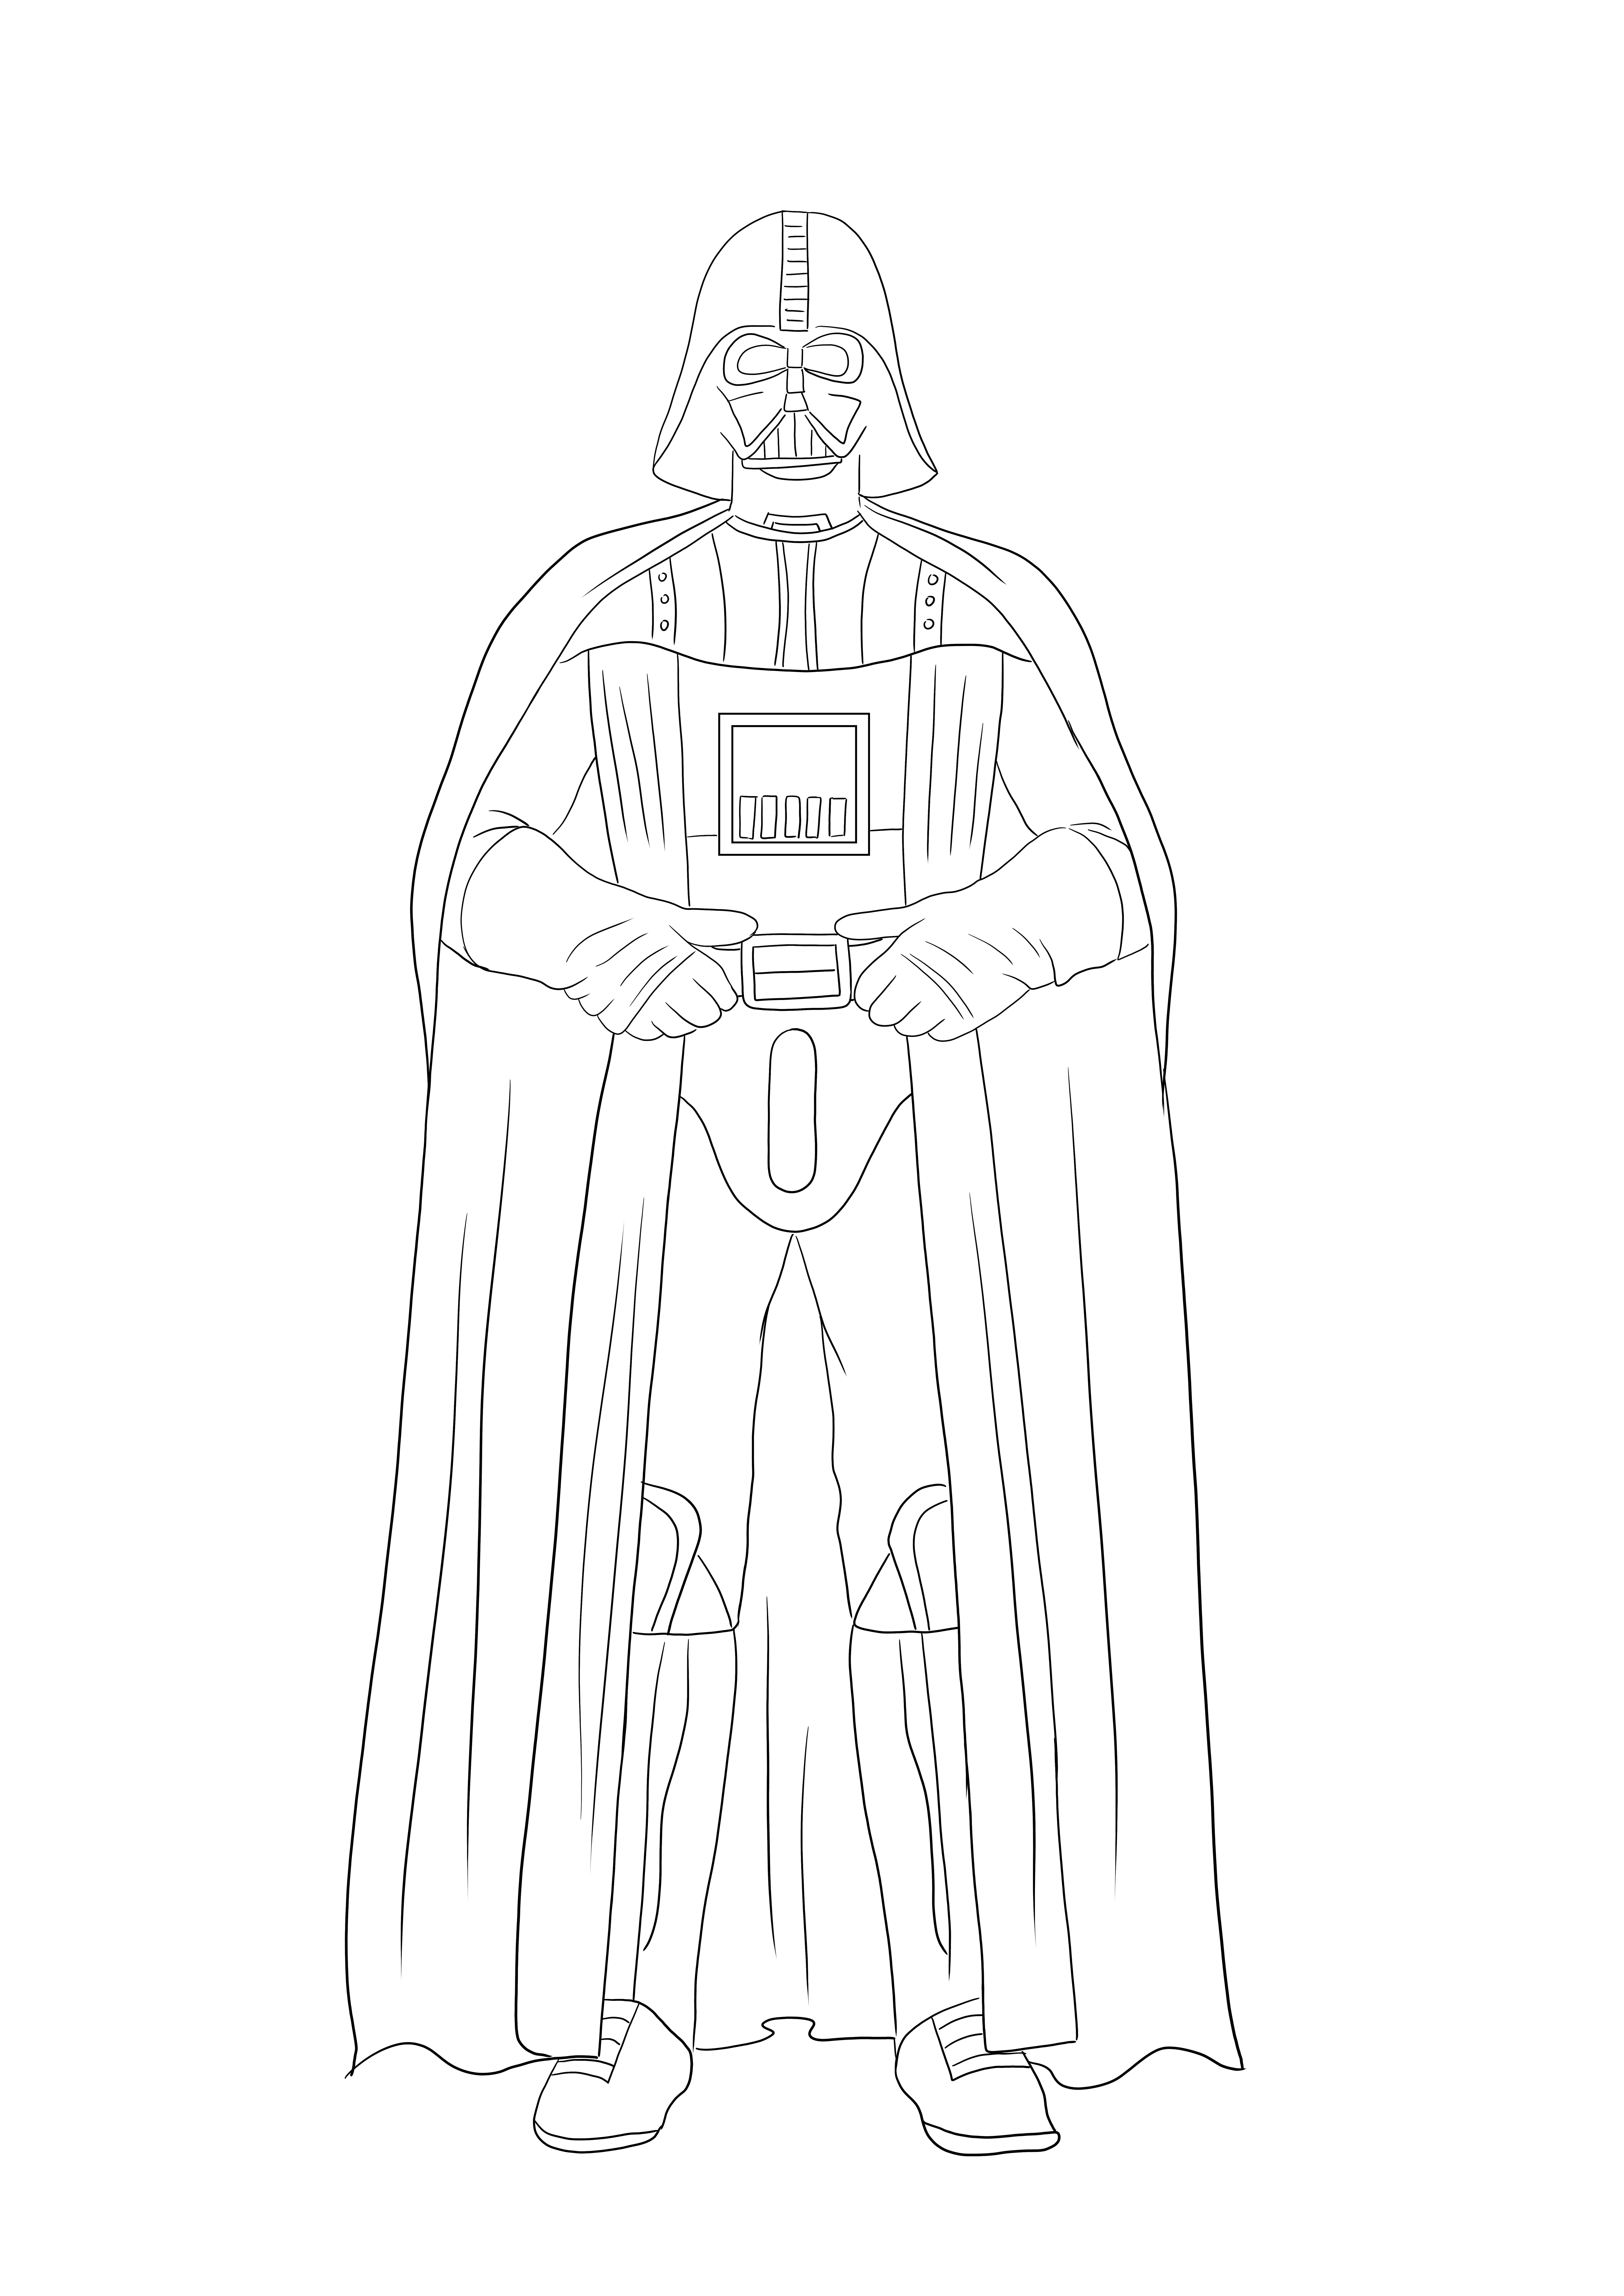 Das Ausmalbild von Darth Vader kann von all seinen Fans gedruckt und koloriert werden